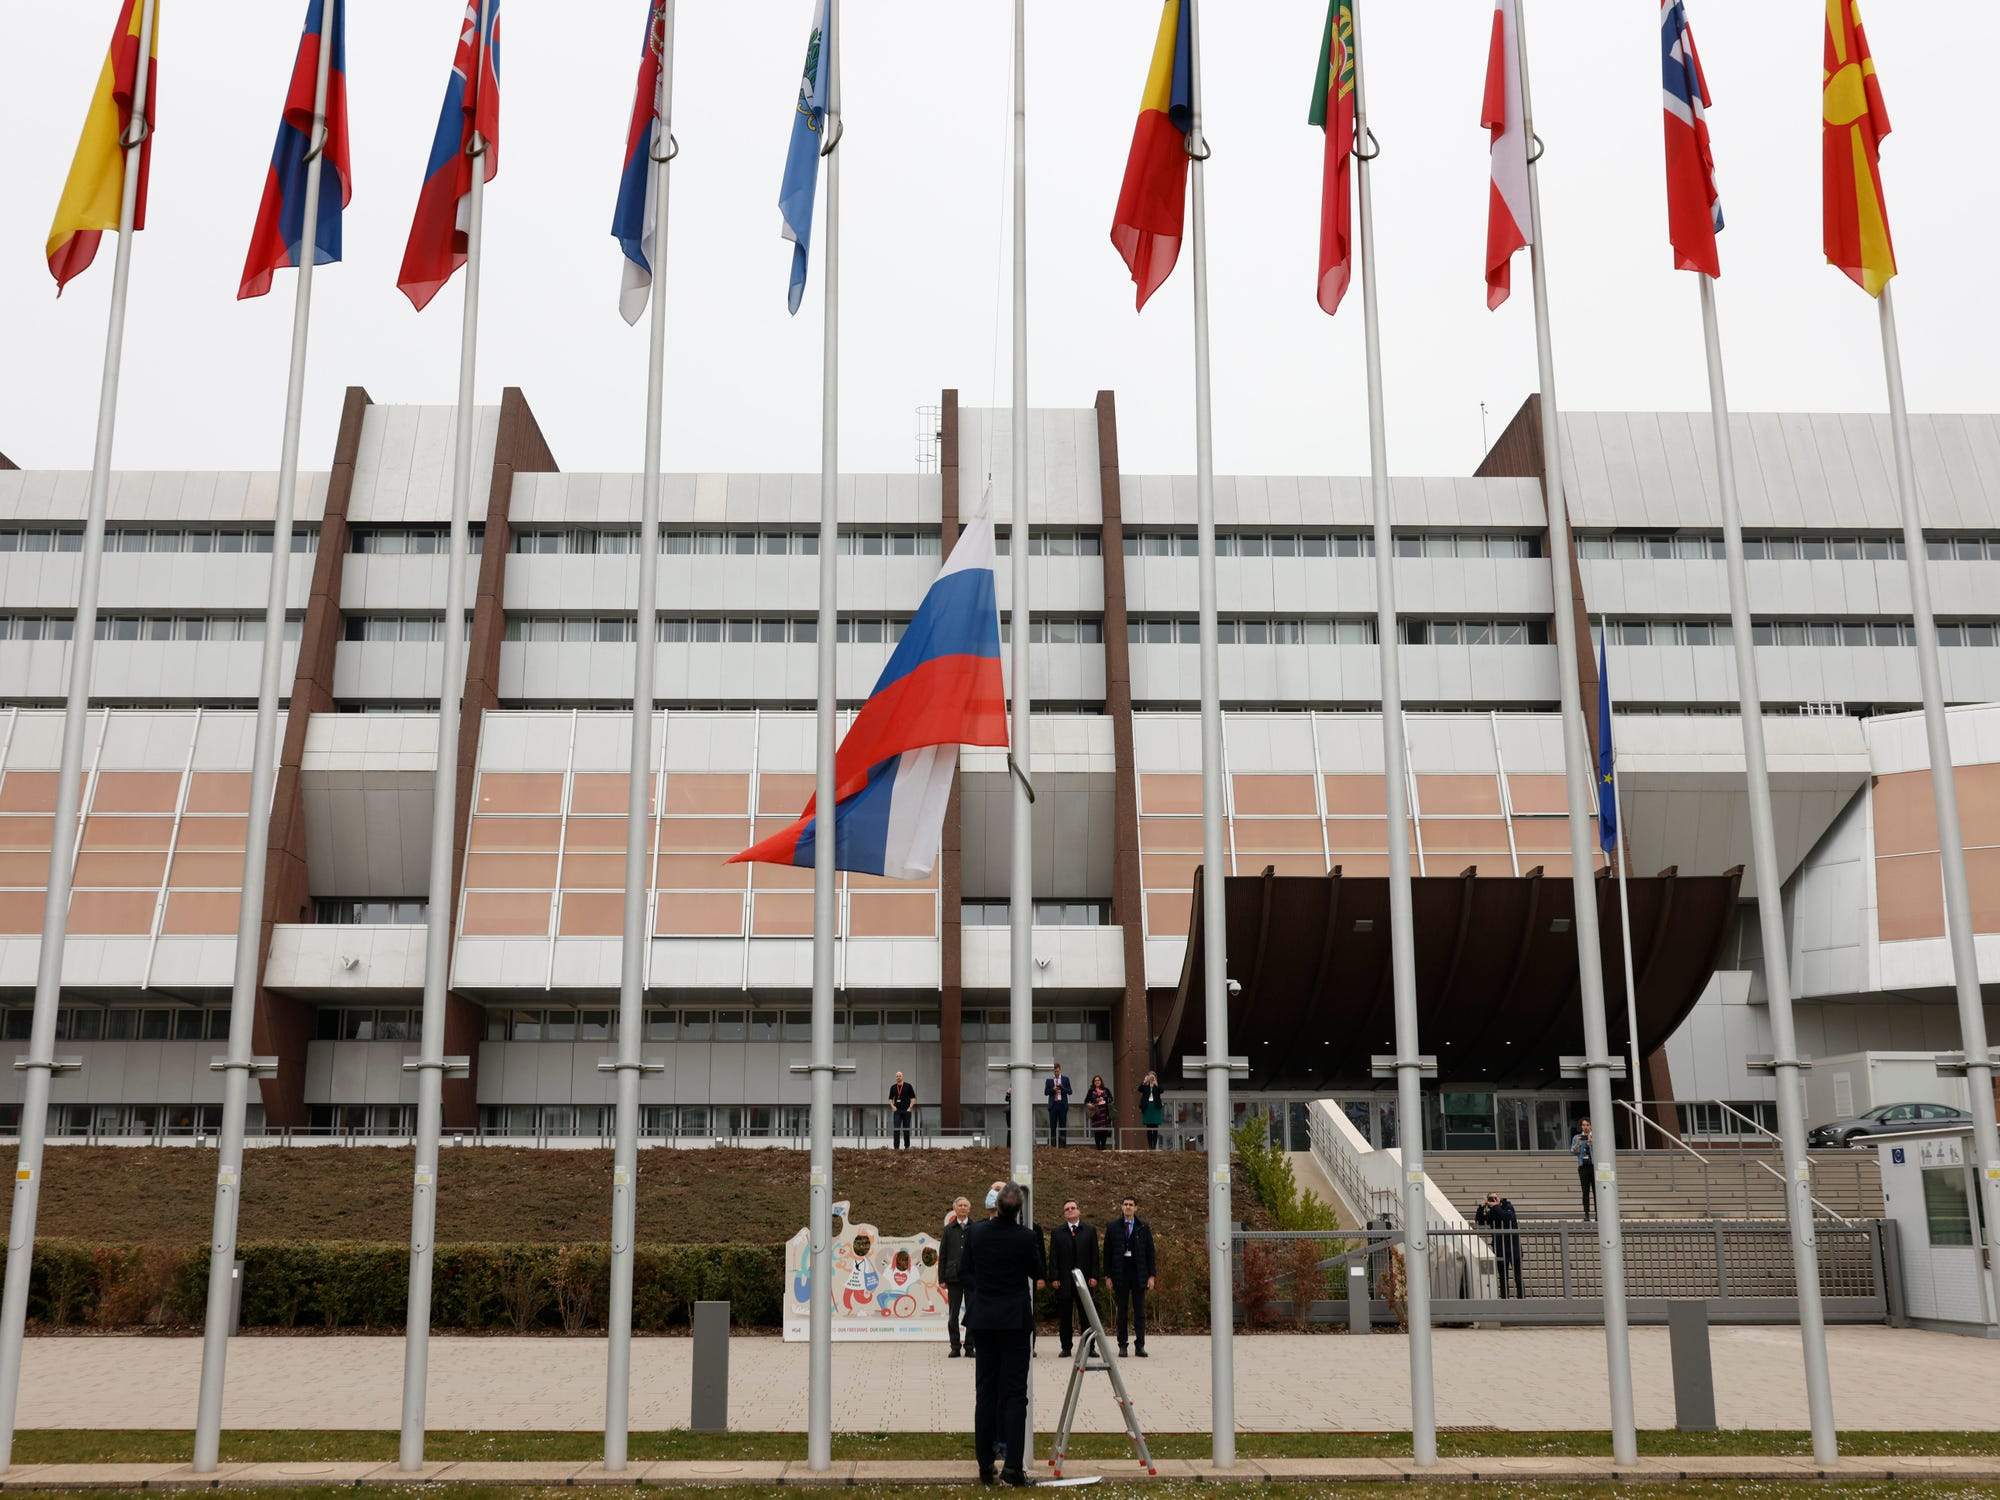 Ruska zastava skinuta ispred Vijeća Evrope.jpeg - Rusija više nije član Vijeća Evrope, u Strasbourgu skinuta ruska zastava